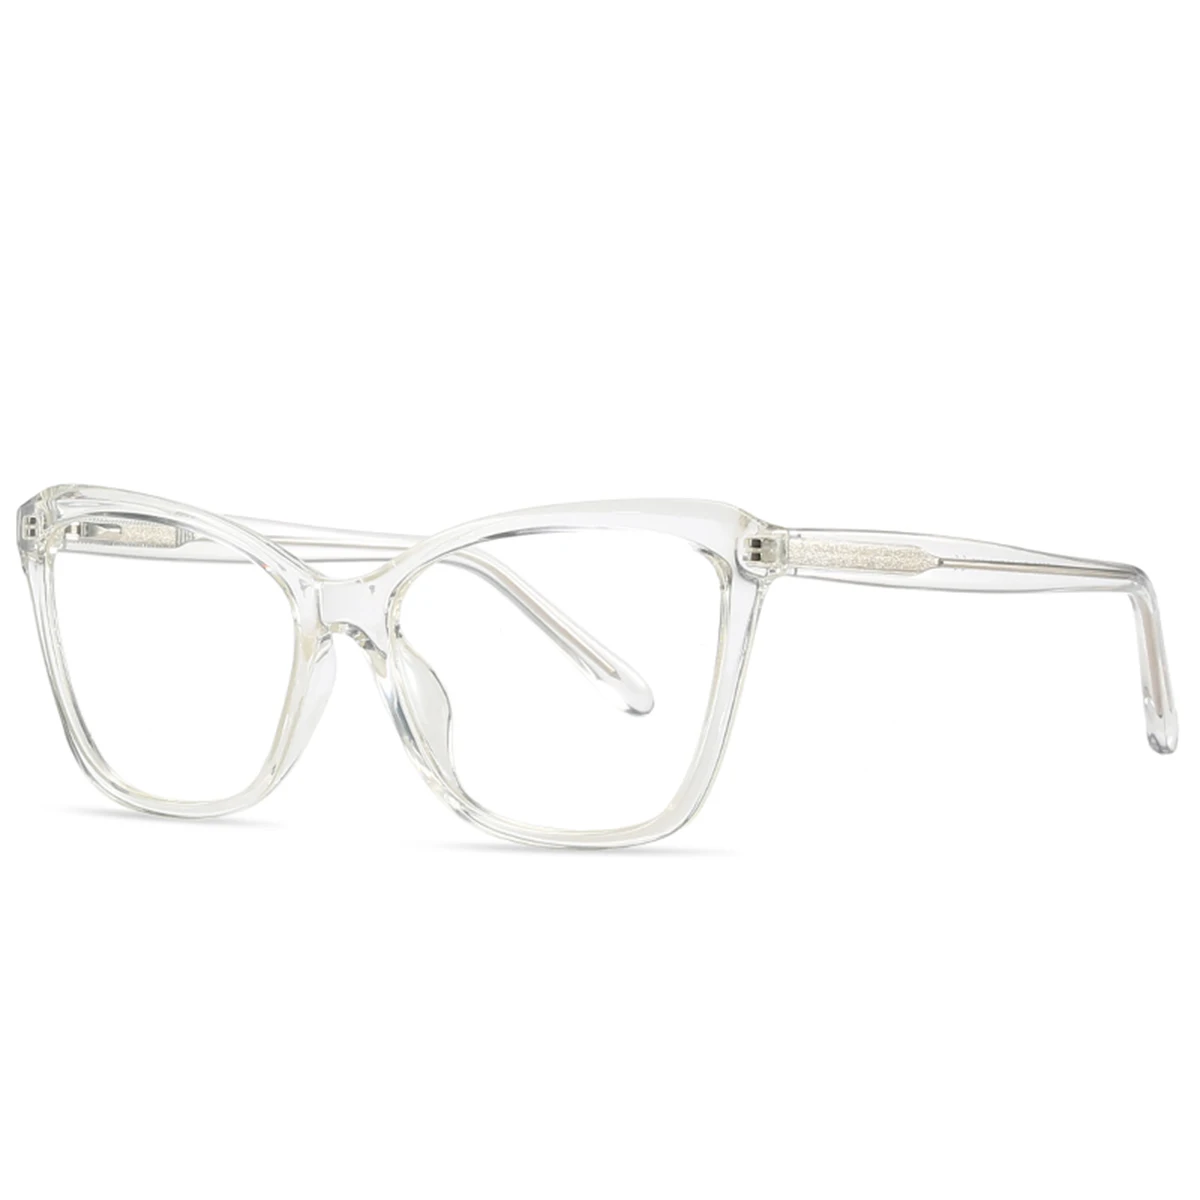 Wholesale transparent spectacle frame ptima gafas de montura de lentes claros TR anteojo para hombre progresivos Precios competitivos From m.alibaba.com